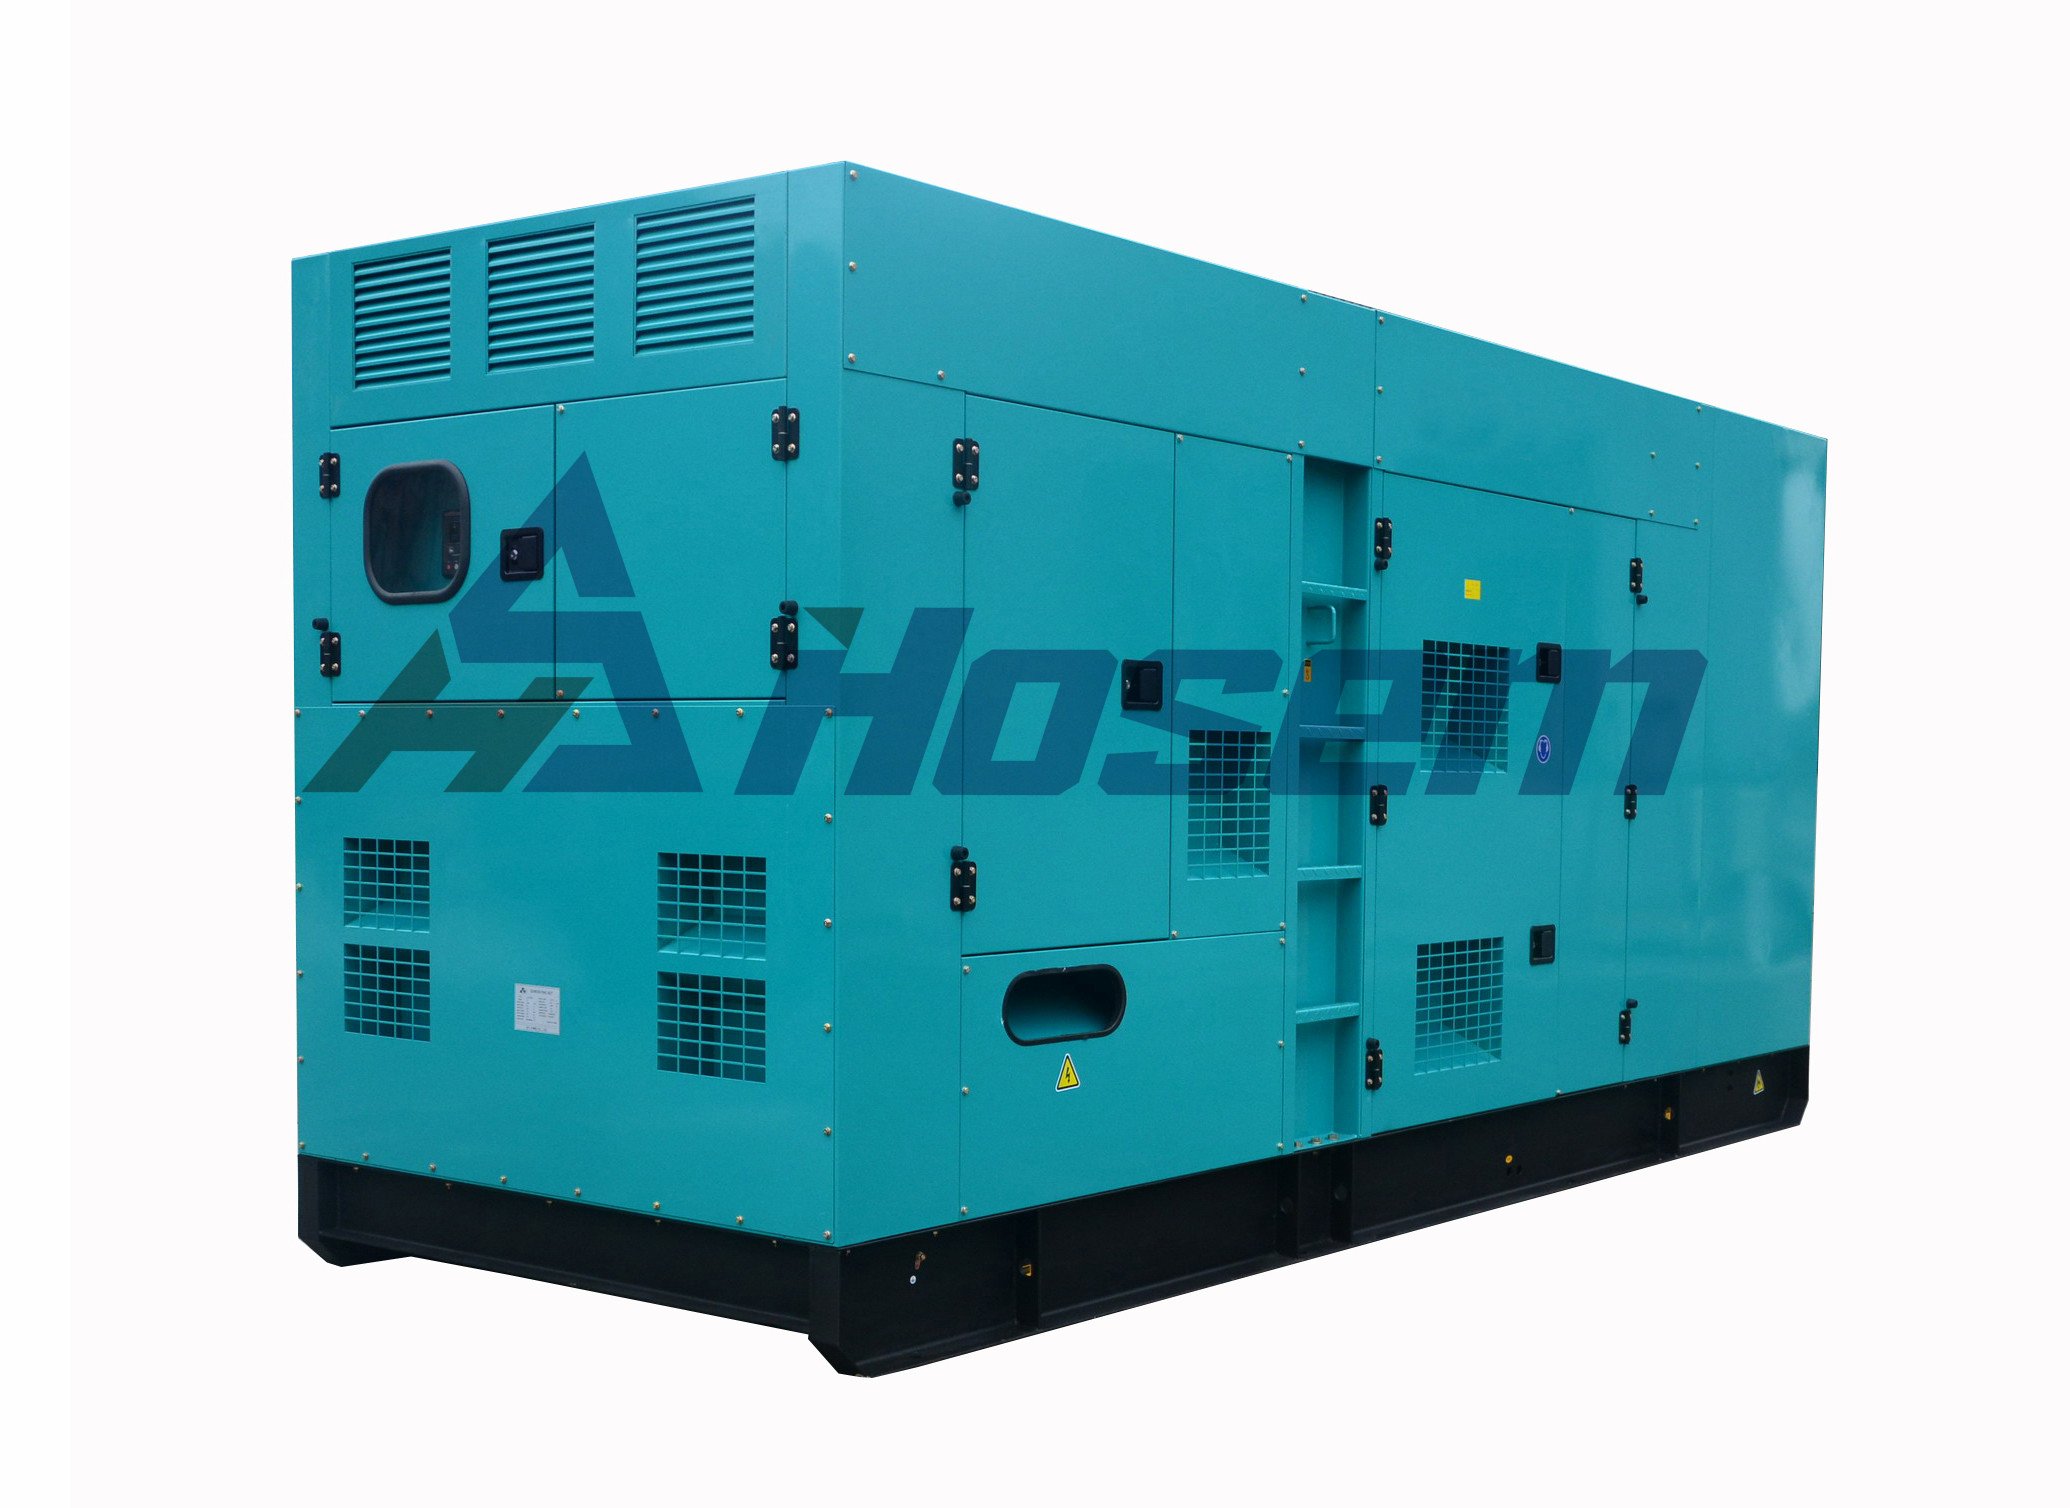 Dźwiękochłonny generator wysokoprężny 500kVA